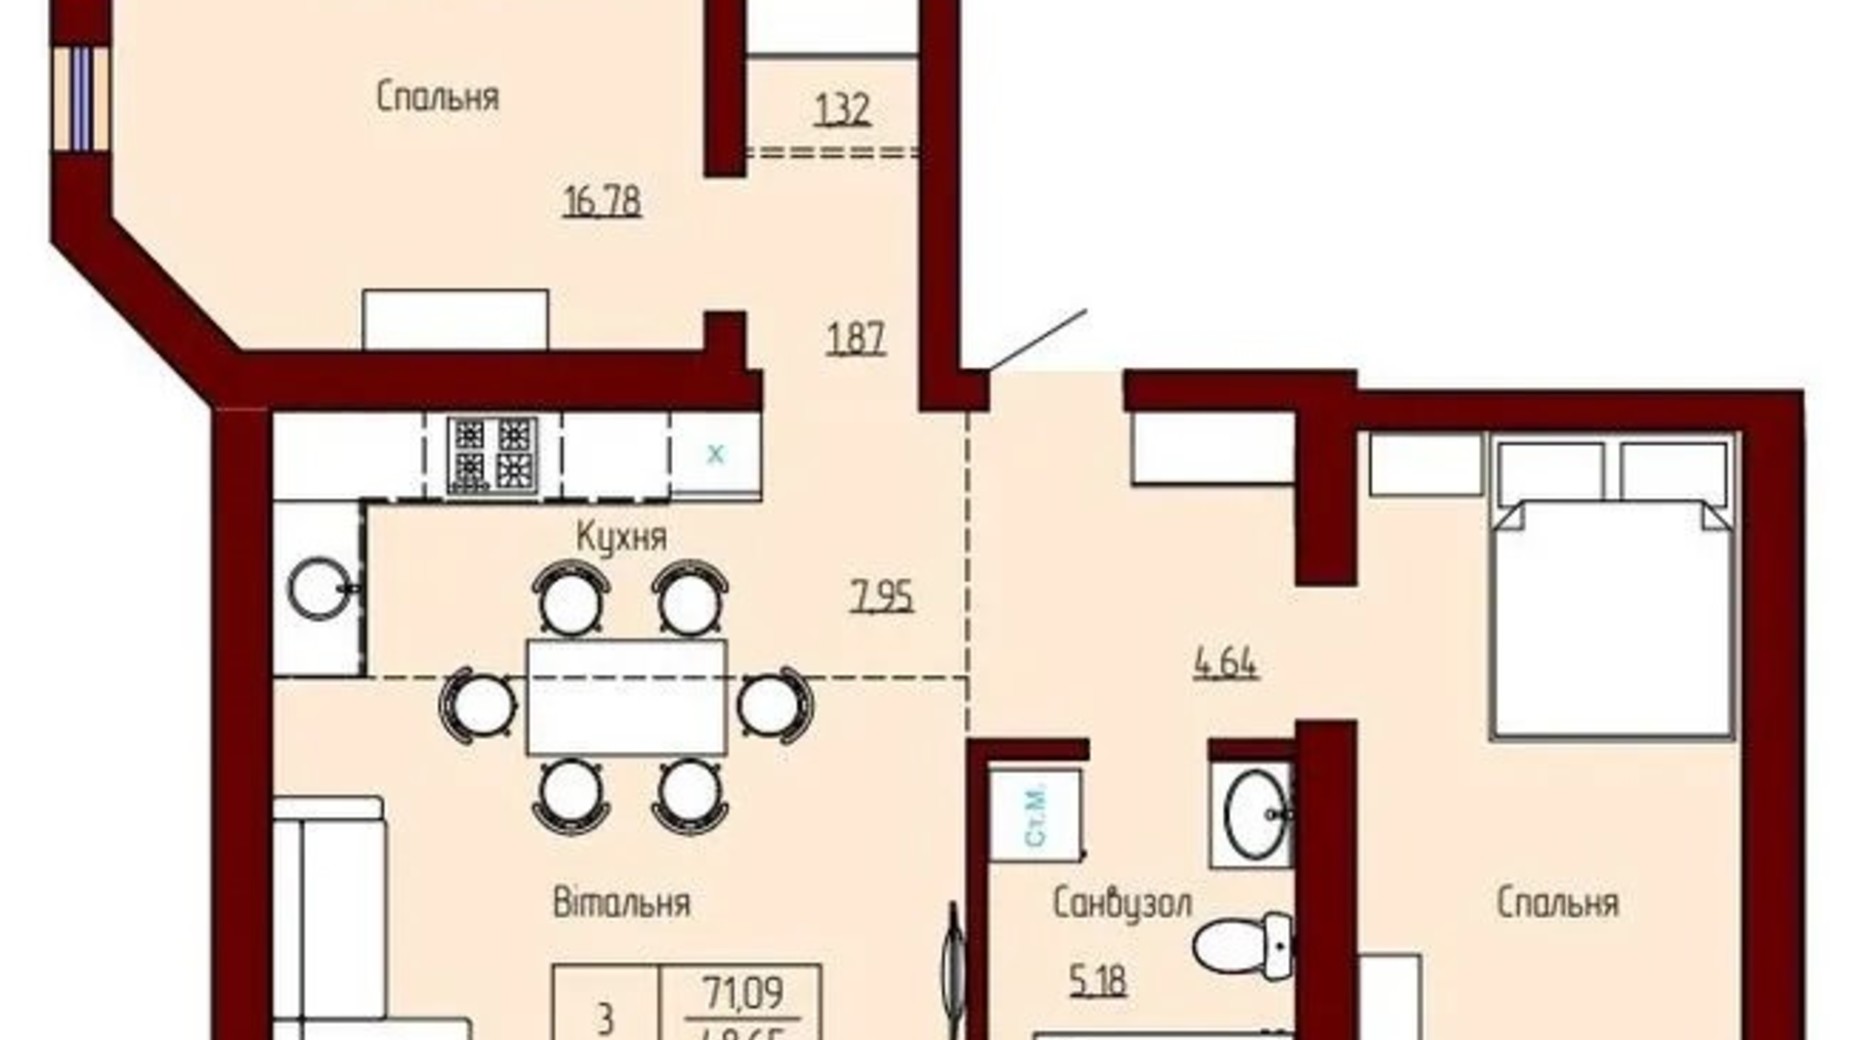 Планировка 2-комнатной квартиры в ЖК Prestige Palace 71.09 м², фото 620840